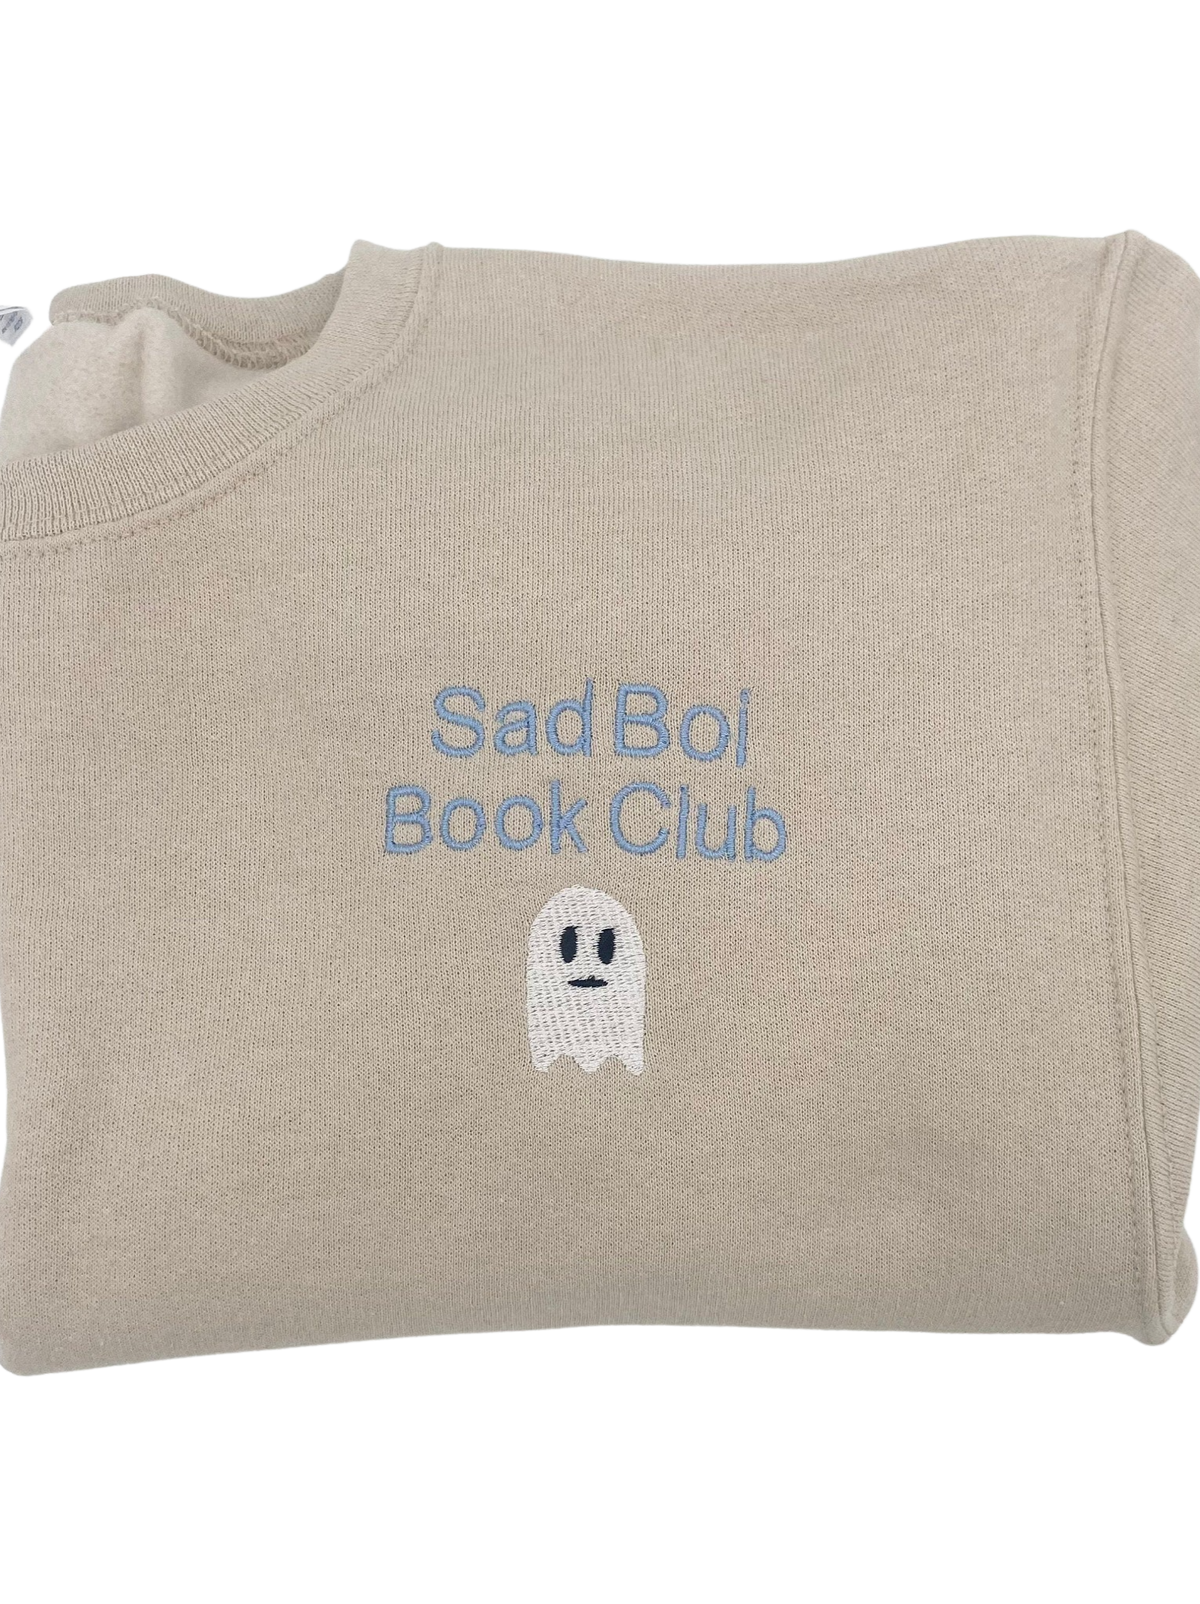 Sad Boi Book Club Crewneck Sweatshirt or Tee